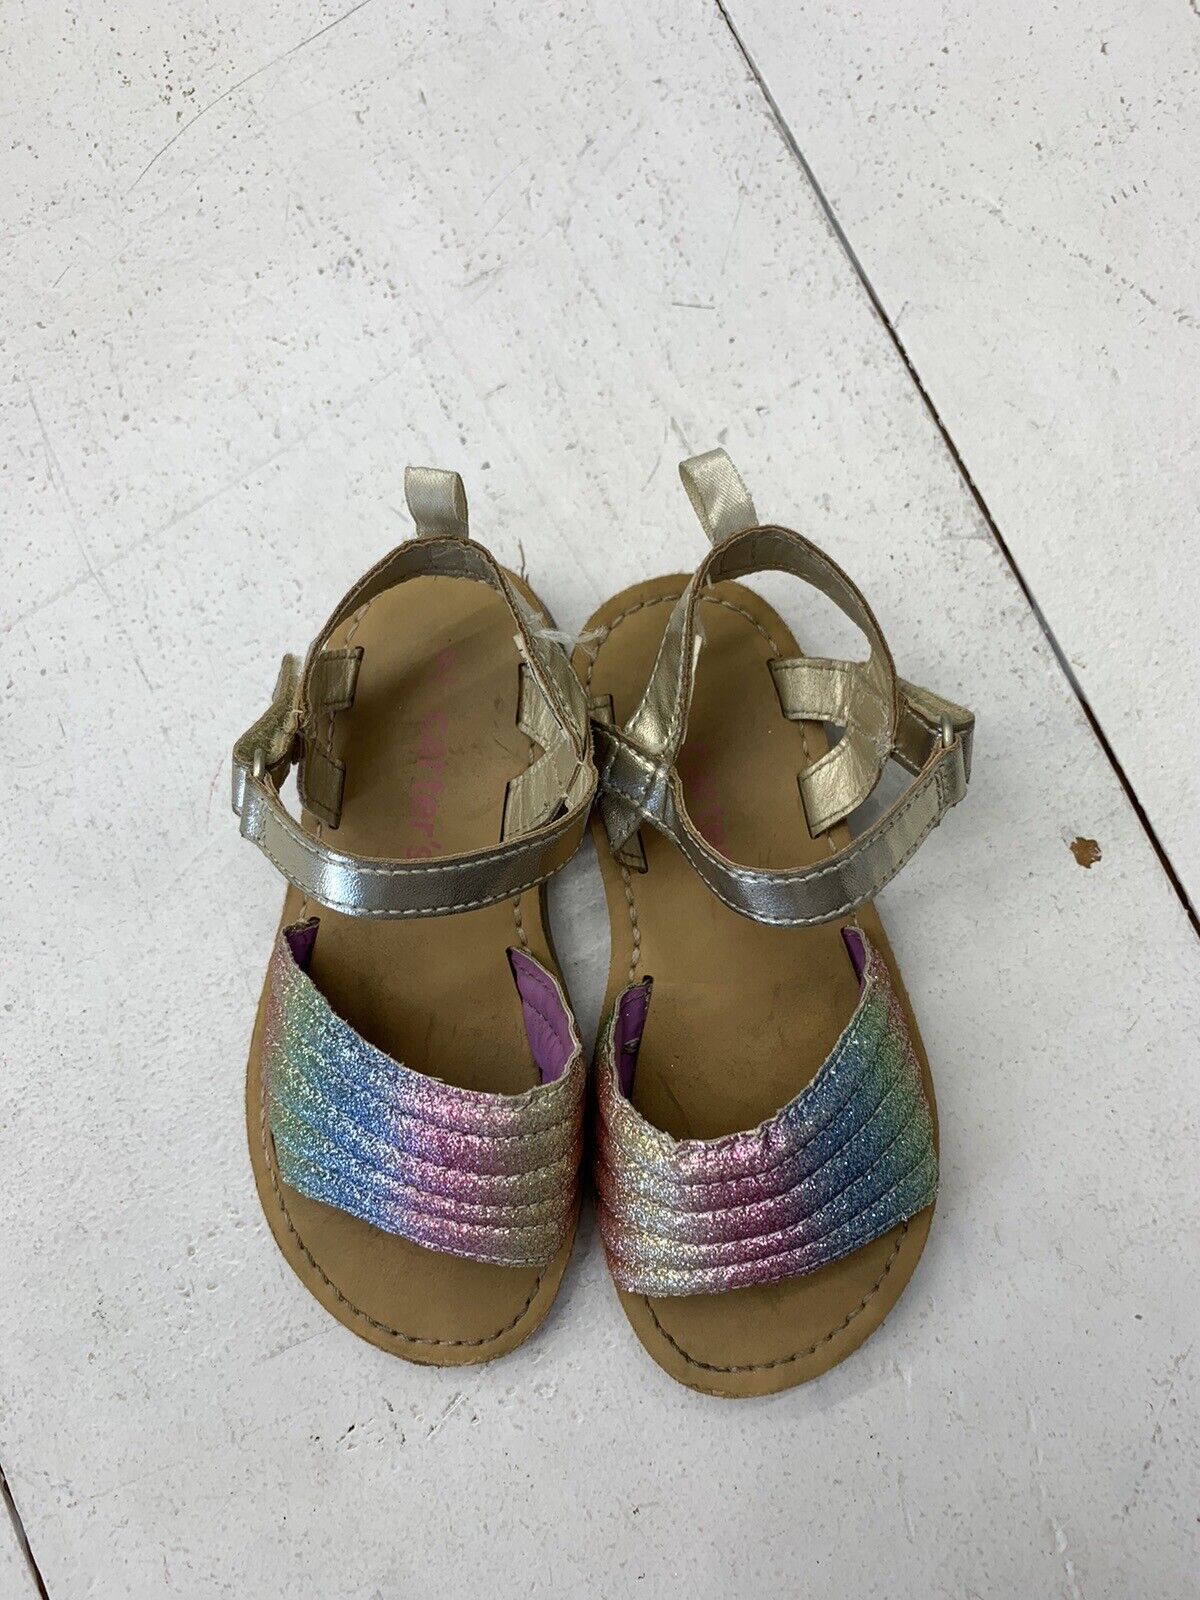 Snapklik.com : Toddler Girls Sandals Little Girls Kids Summer Shoes Toddler  Nude Sandals Size 9